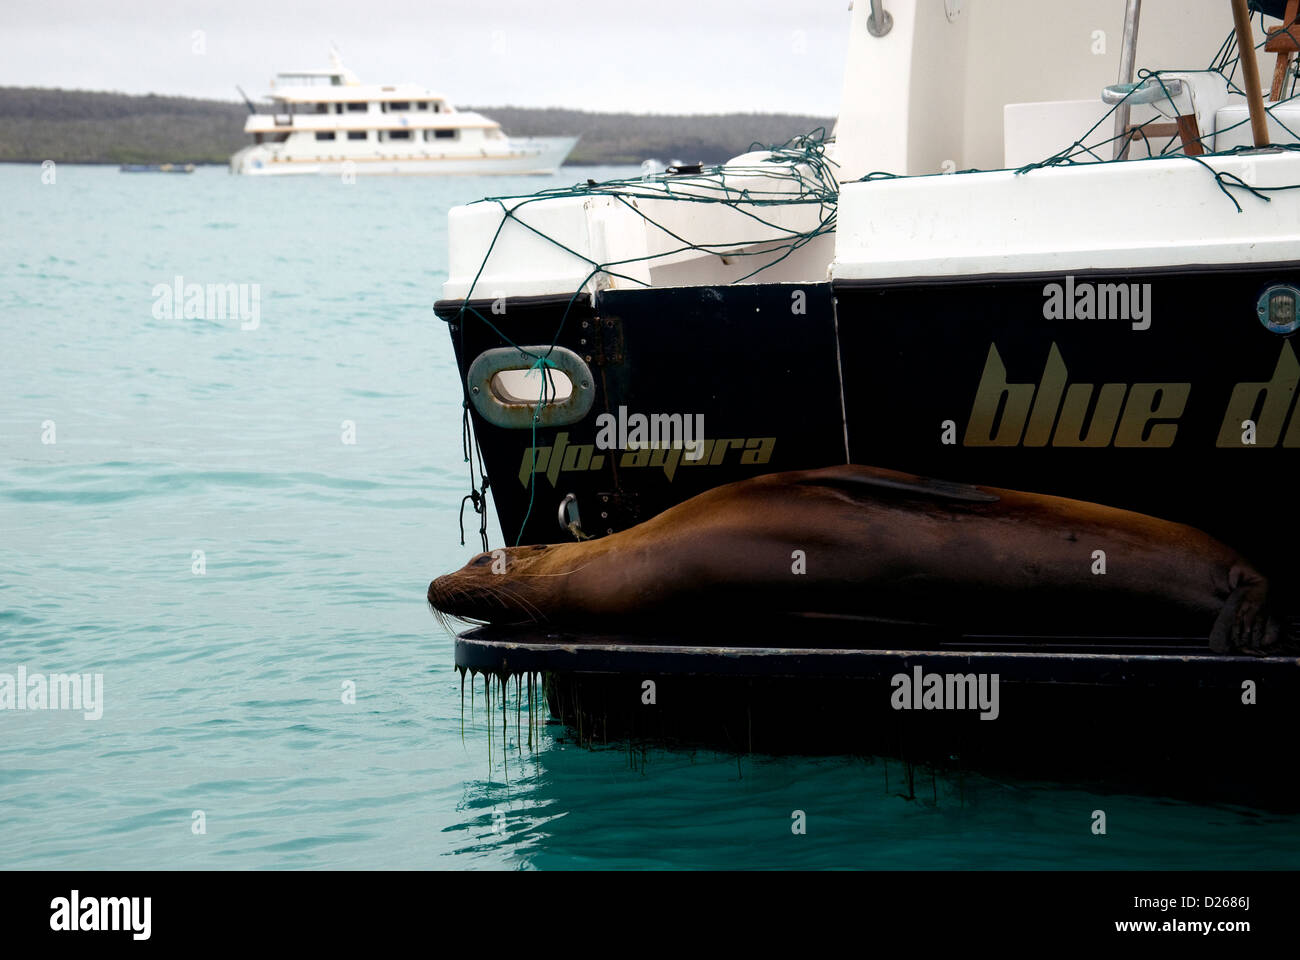 Eine entspannte Galapagos-Seelöwe ausgestreckt, dass Heck eines Bootes unter anderem im Hafen von Puerto Ayora, Santa Cruz Insel vor Anker Stockfoto